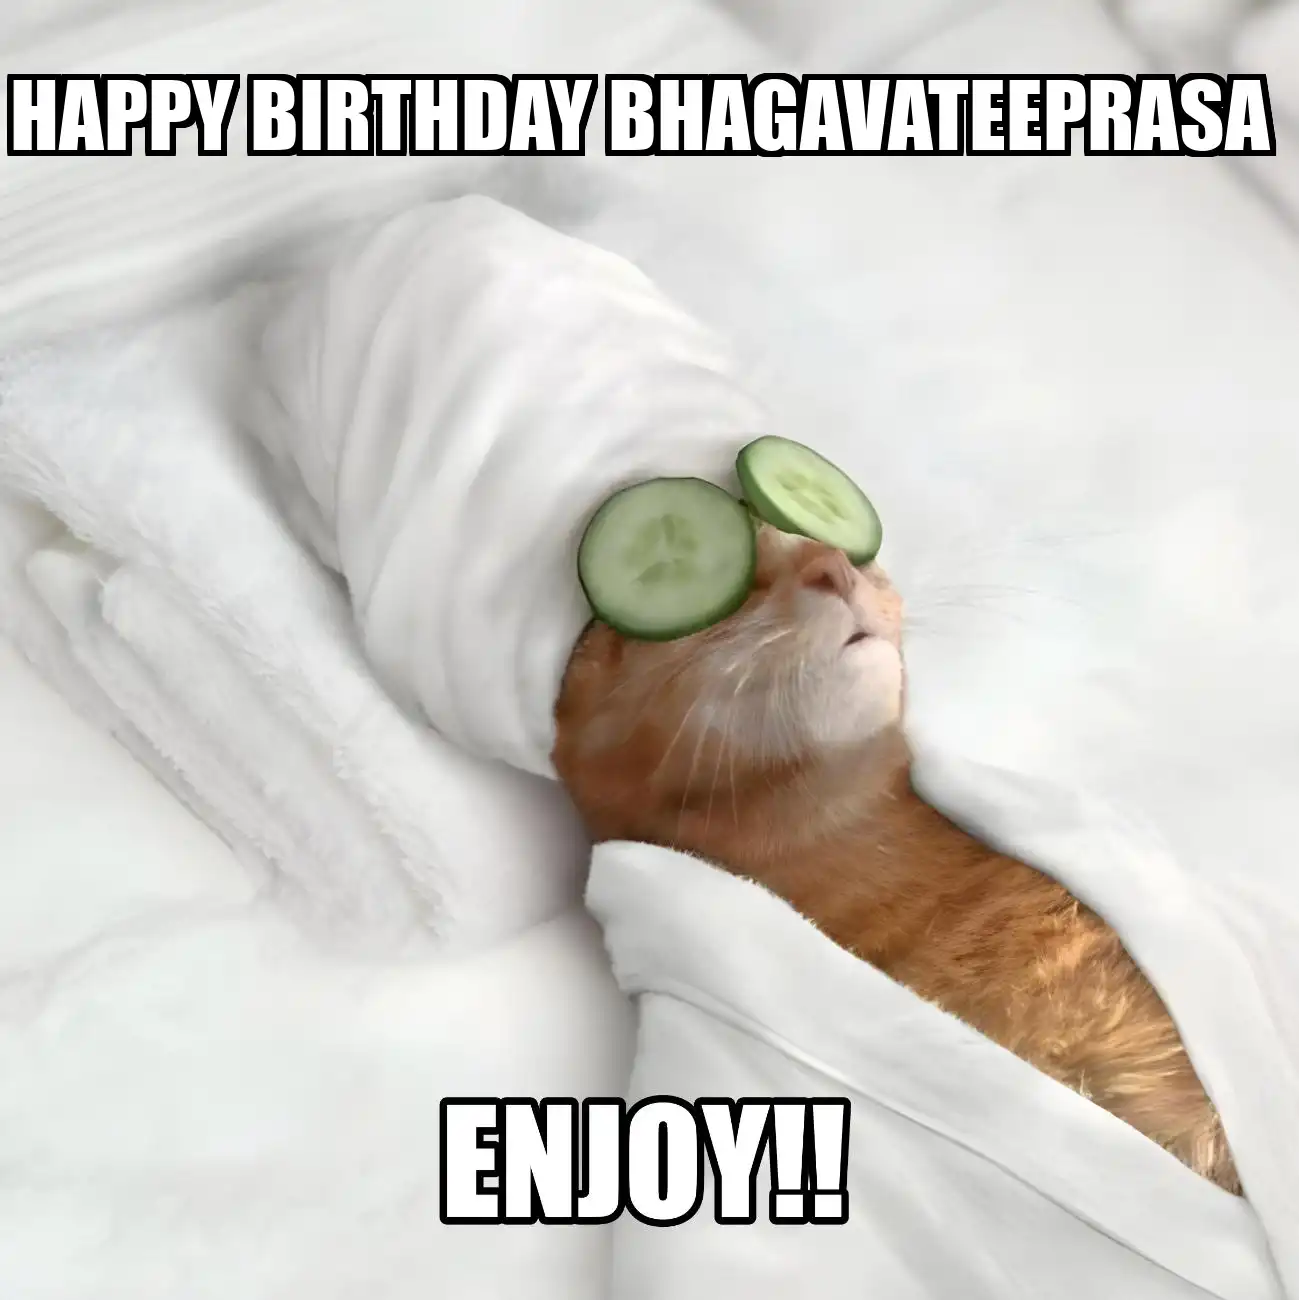 Happy Birthday Bhagavateeprasa Enjoy Cat Meme